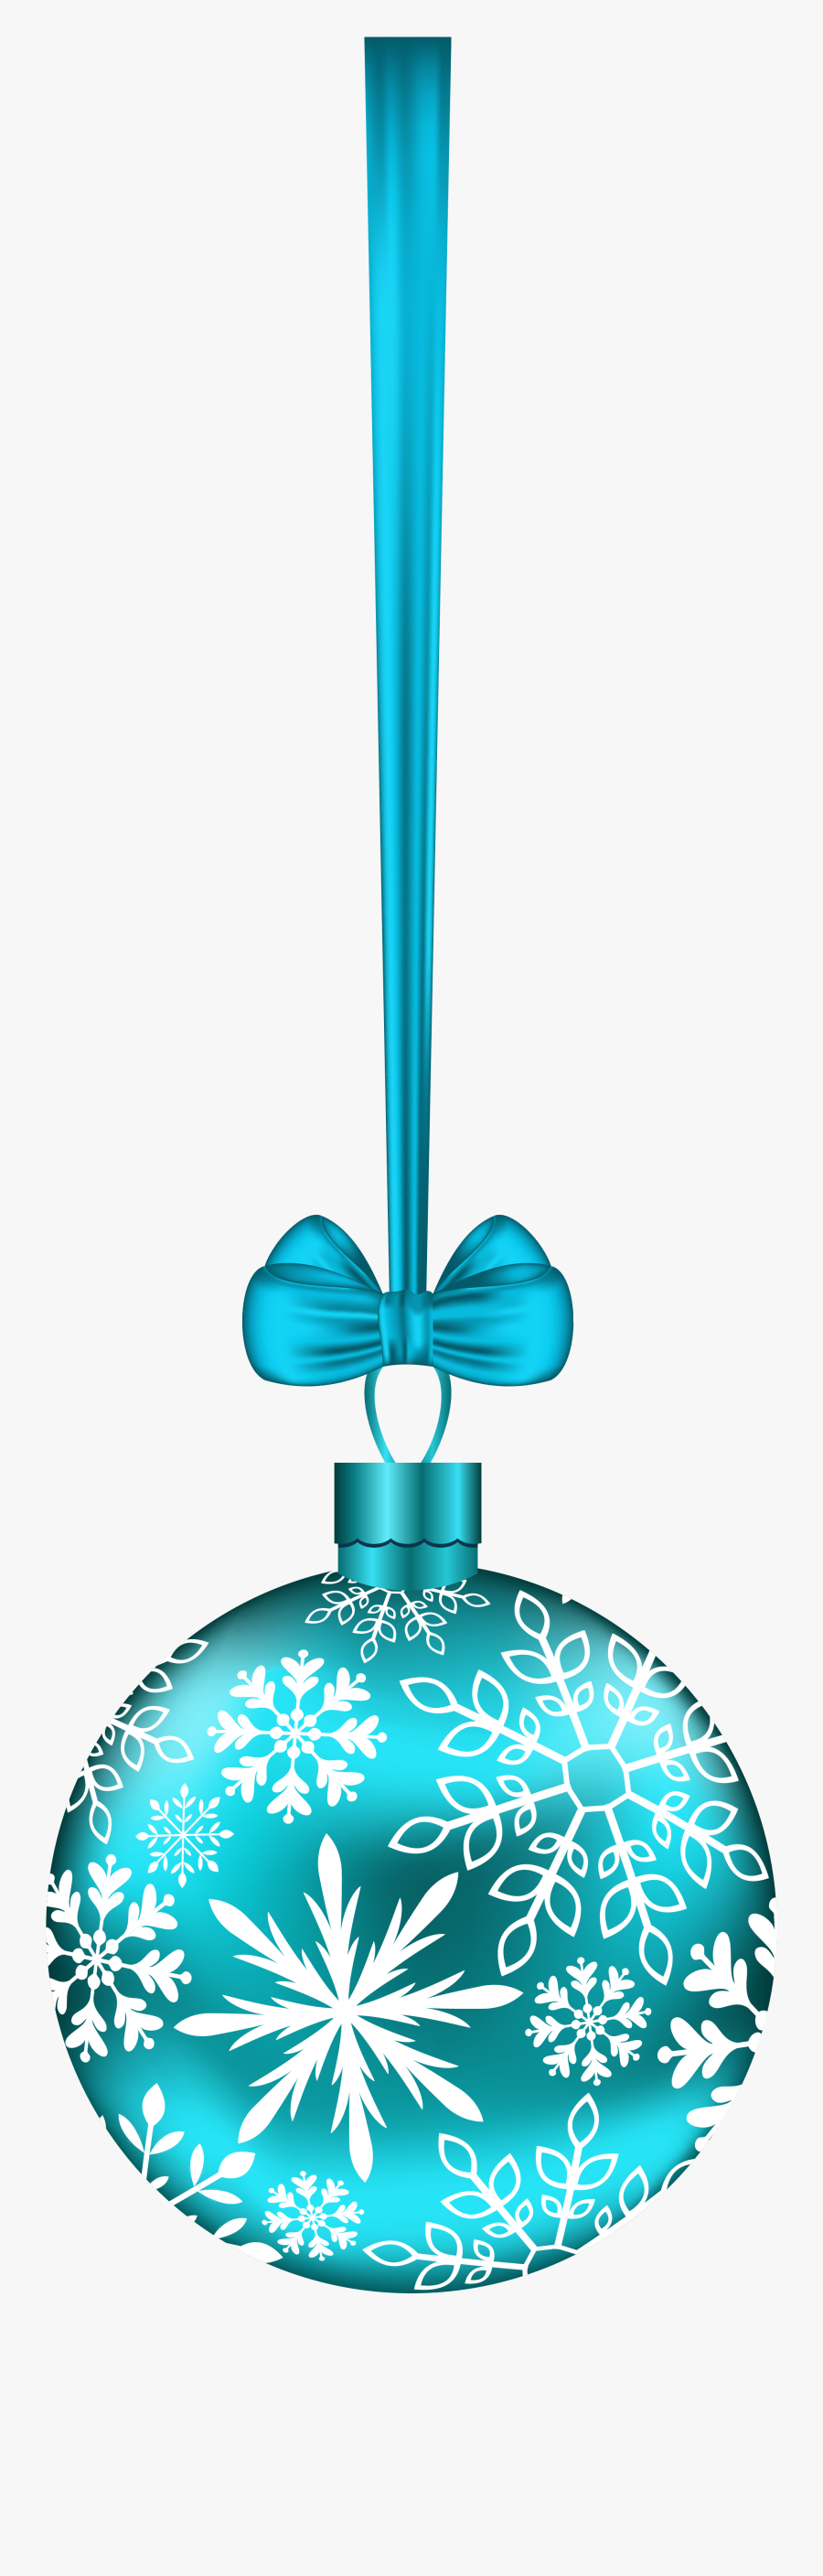 Transparent Christmas Candles Clipart - Centrepiece, Transparent Clipart